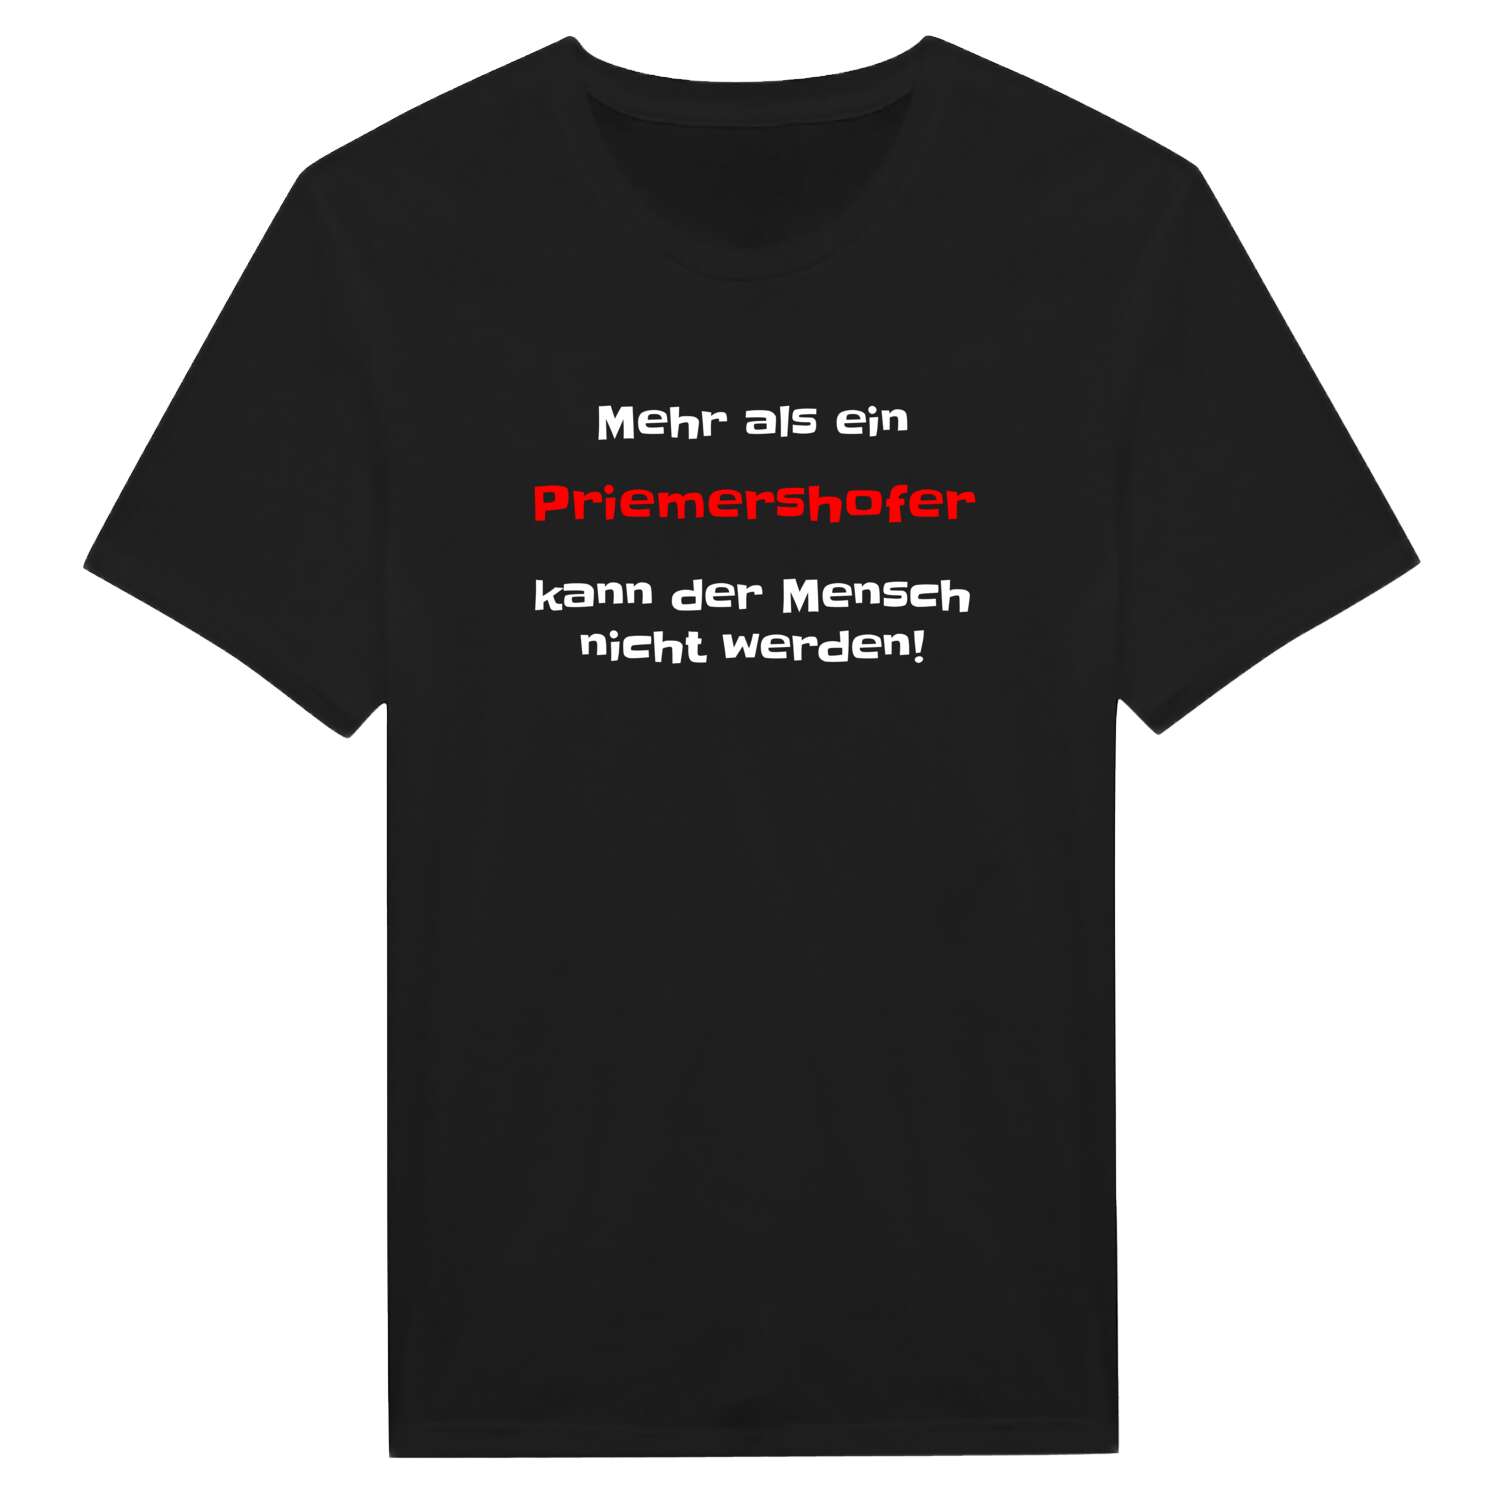 Priemershof T-Shirt »Mehr als ein«